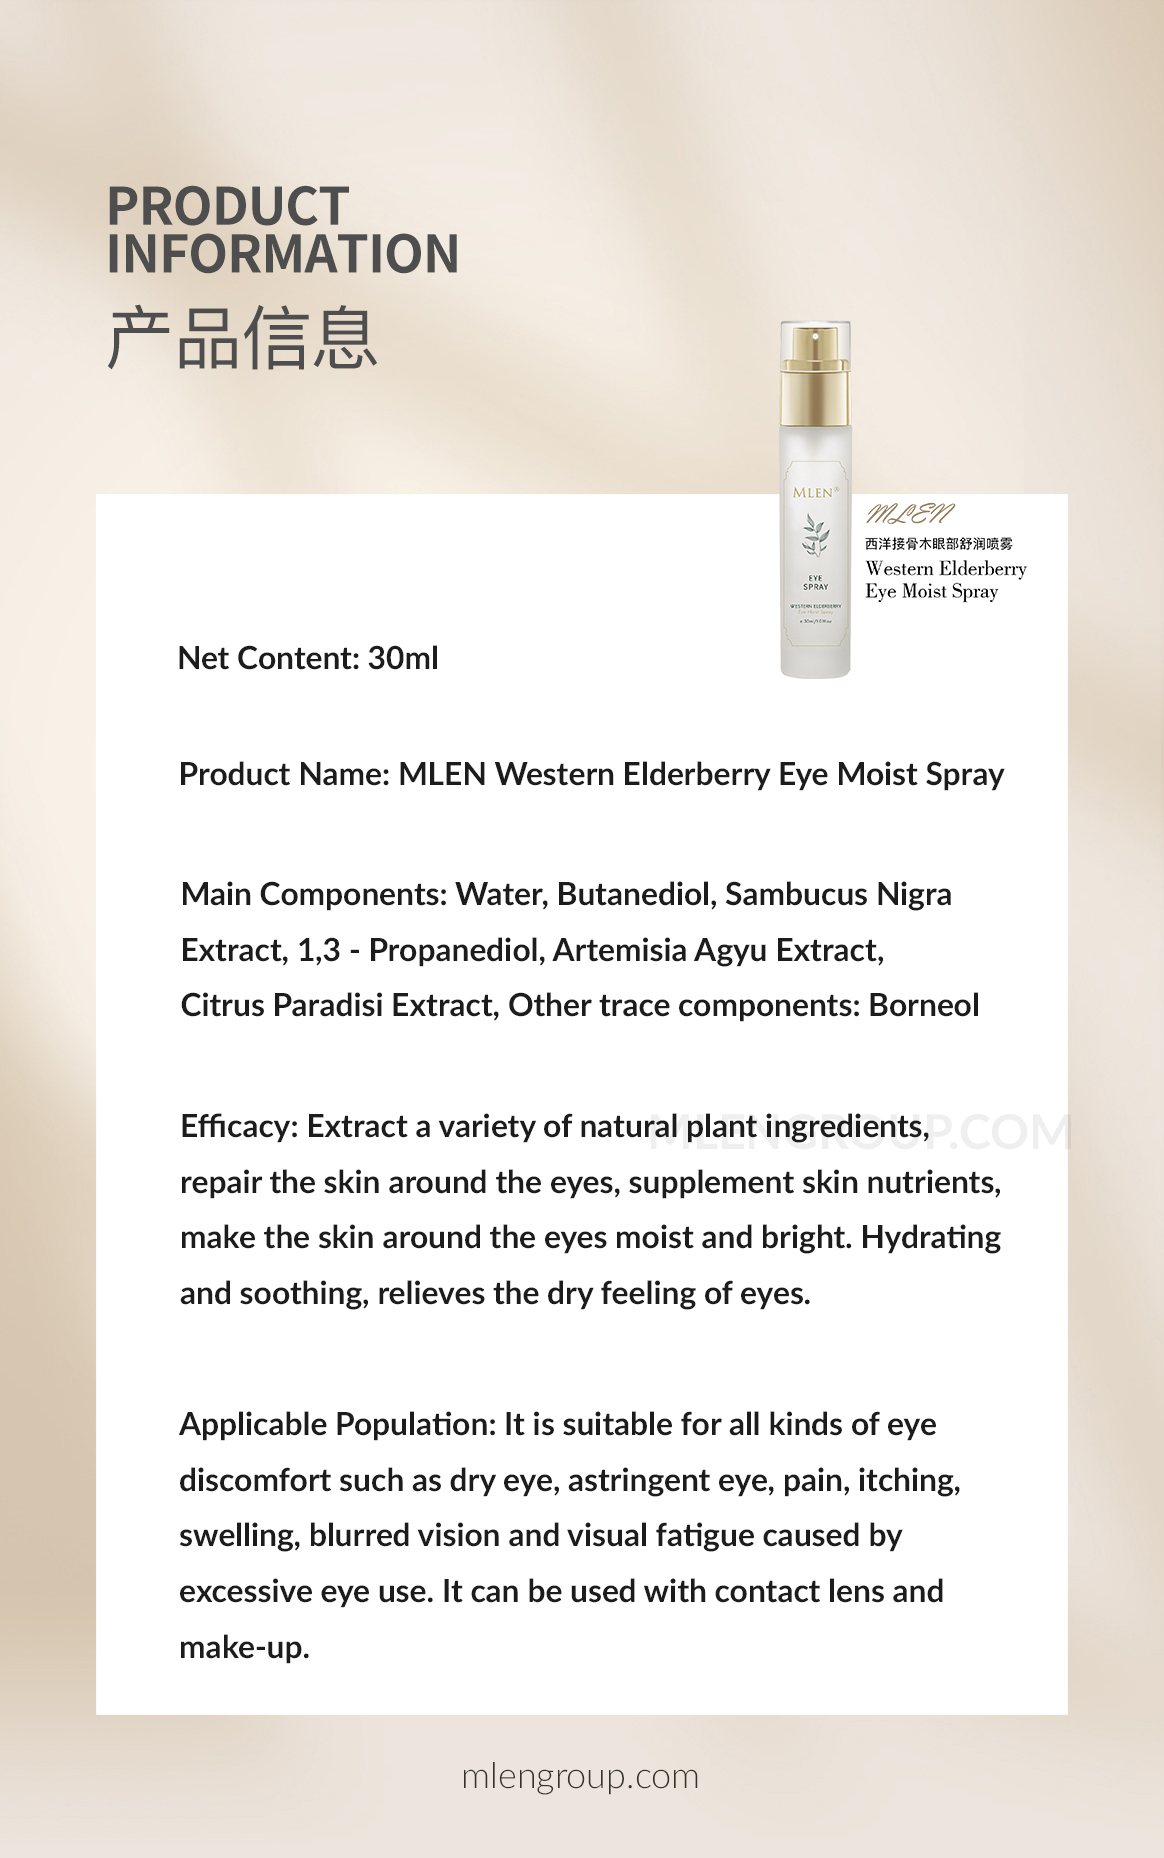 mlen group mlen western elderberry eye moist spray 02